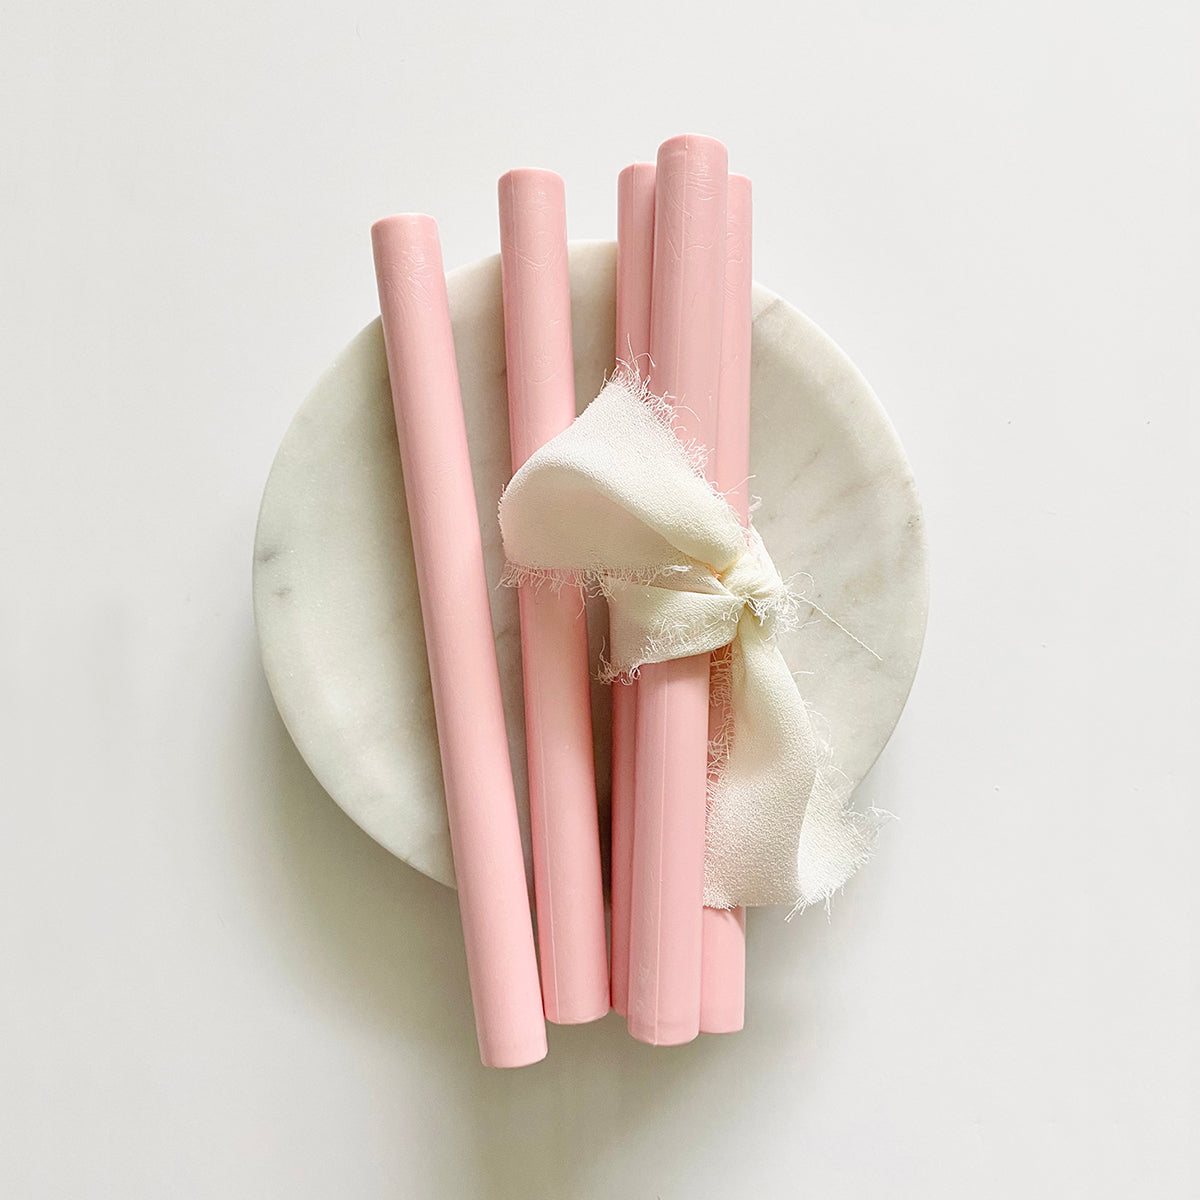 Blush Pink Sealing Wax Sticks